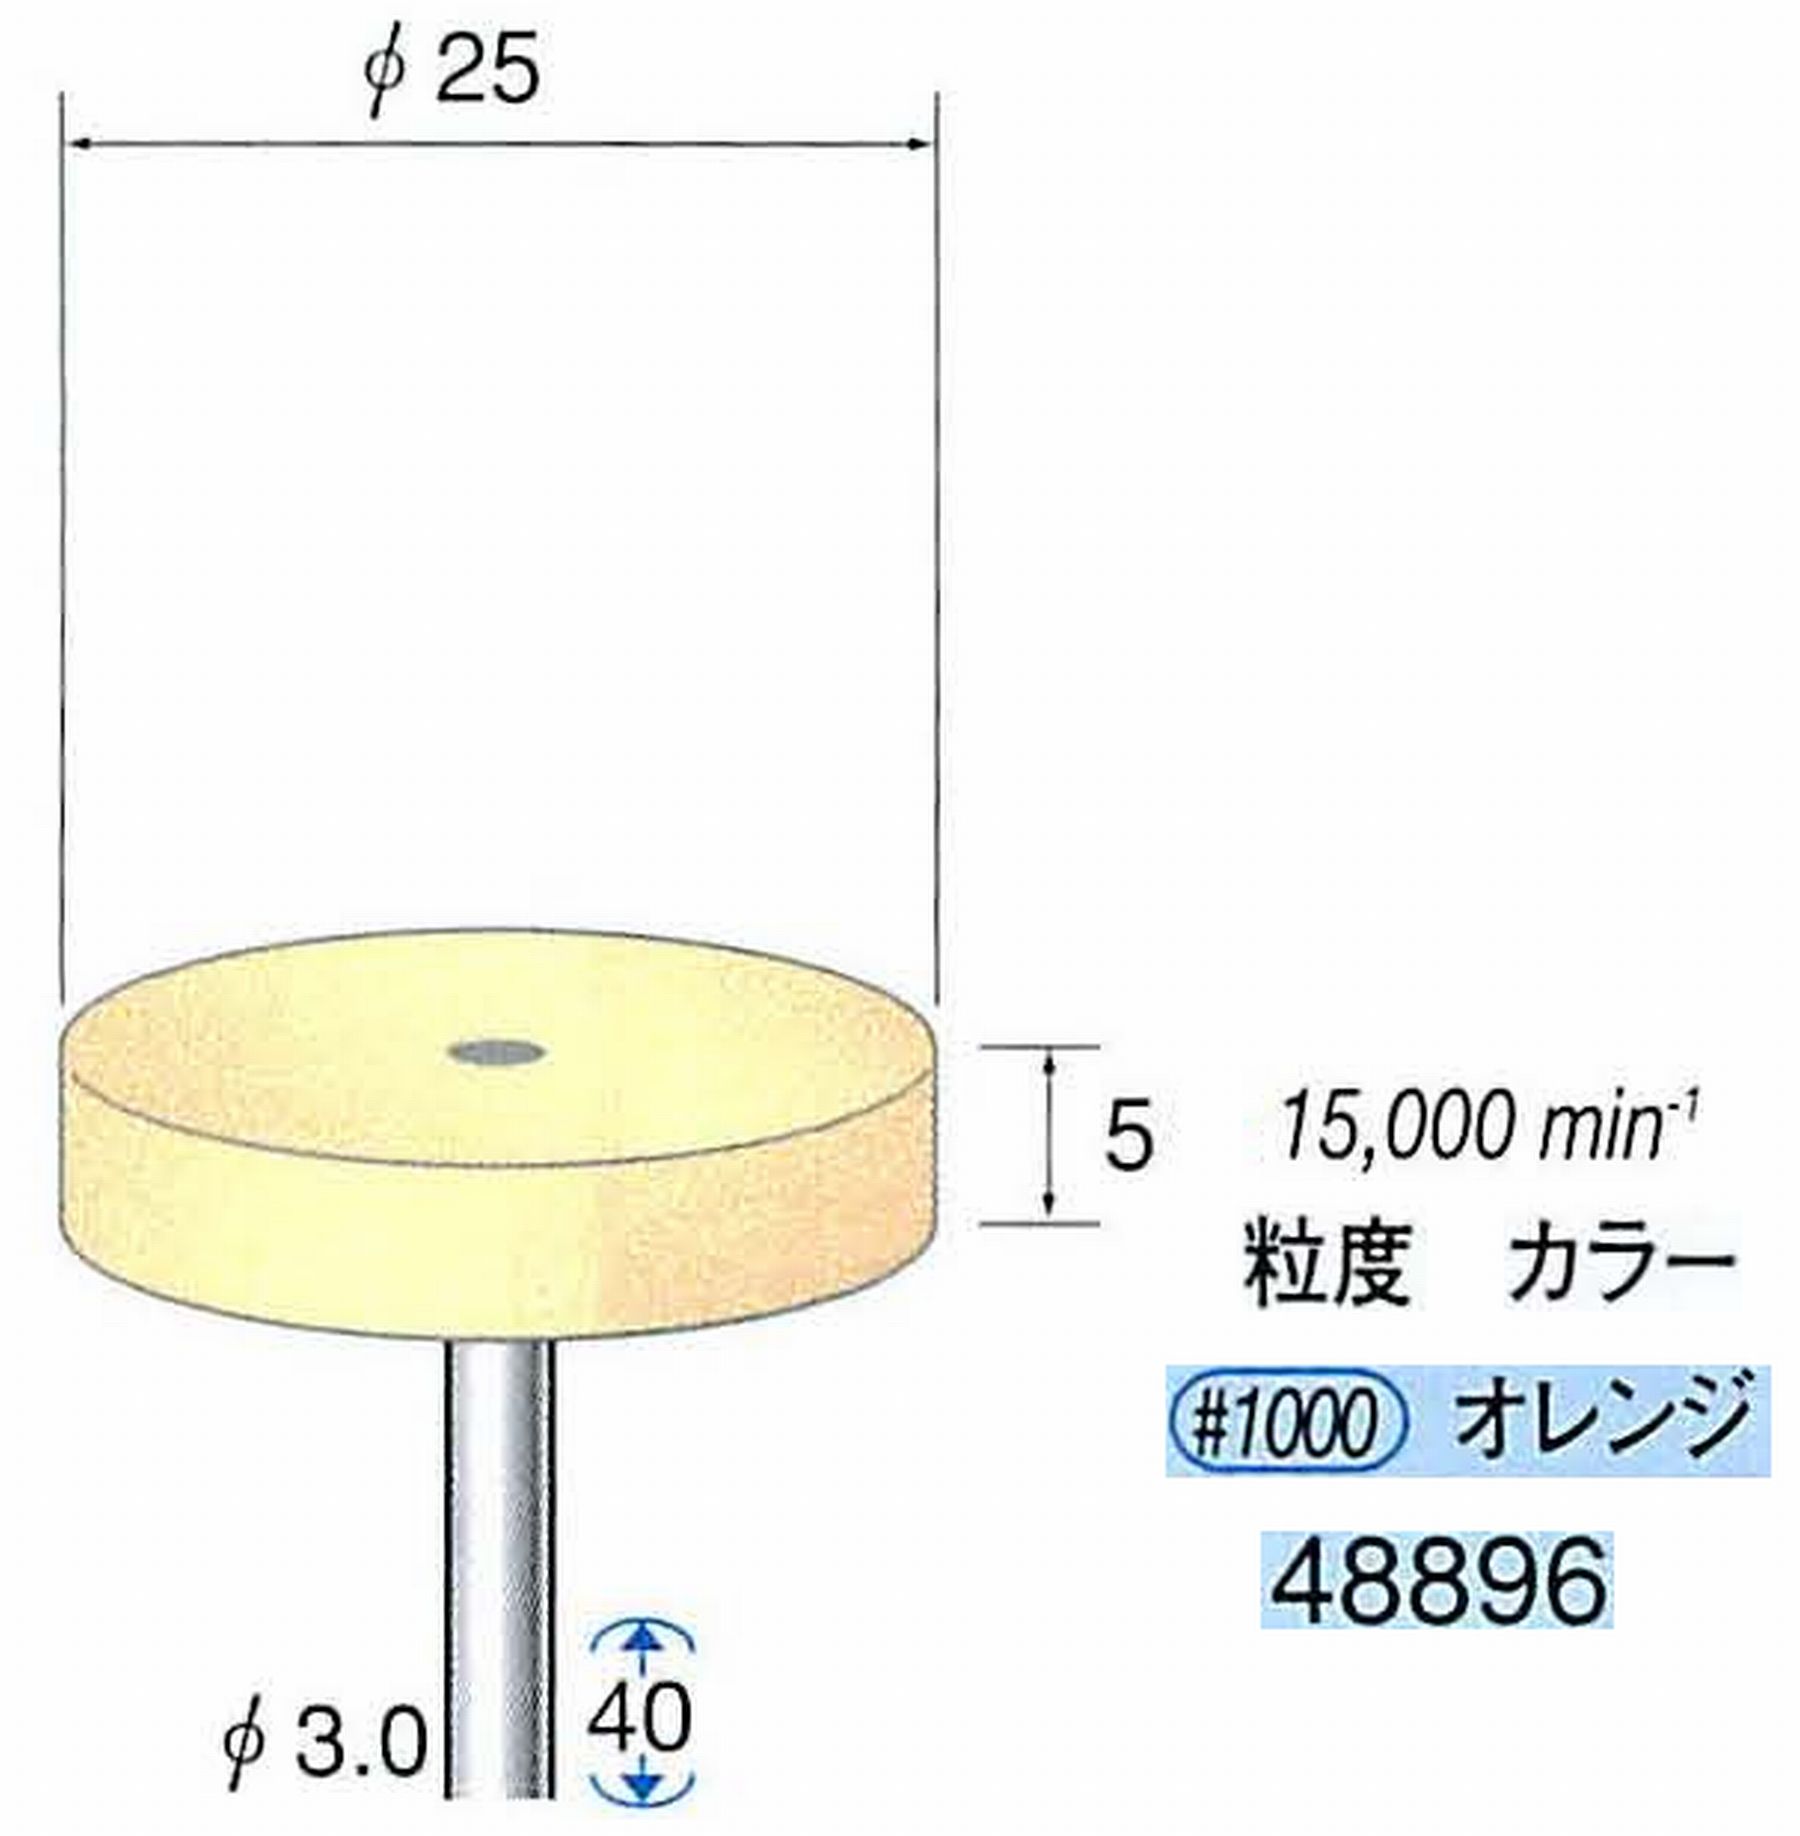 ナカニシ/NAKANISHI ポリッシュサンダー 軸径(シャンク)φ3.0mm 48896